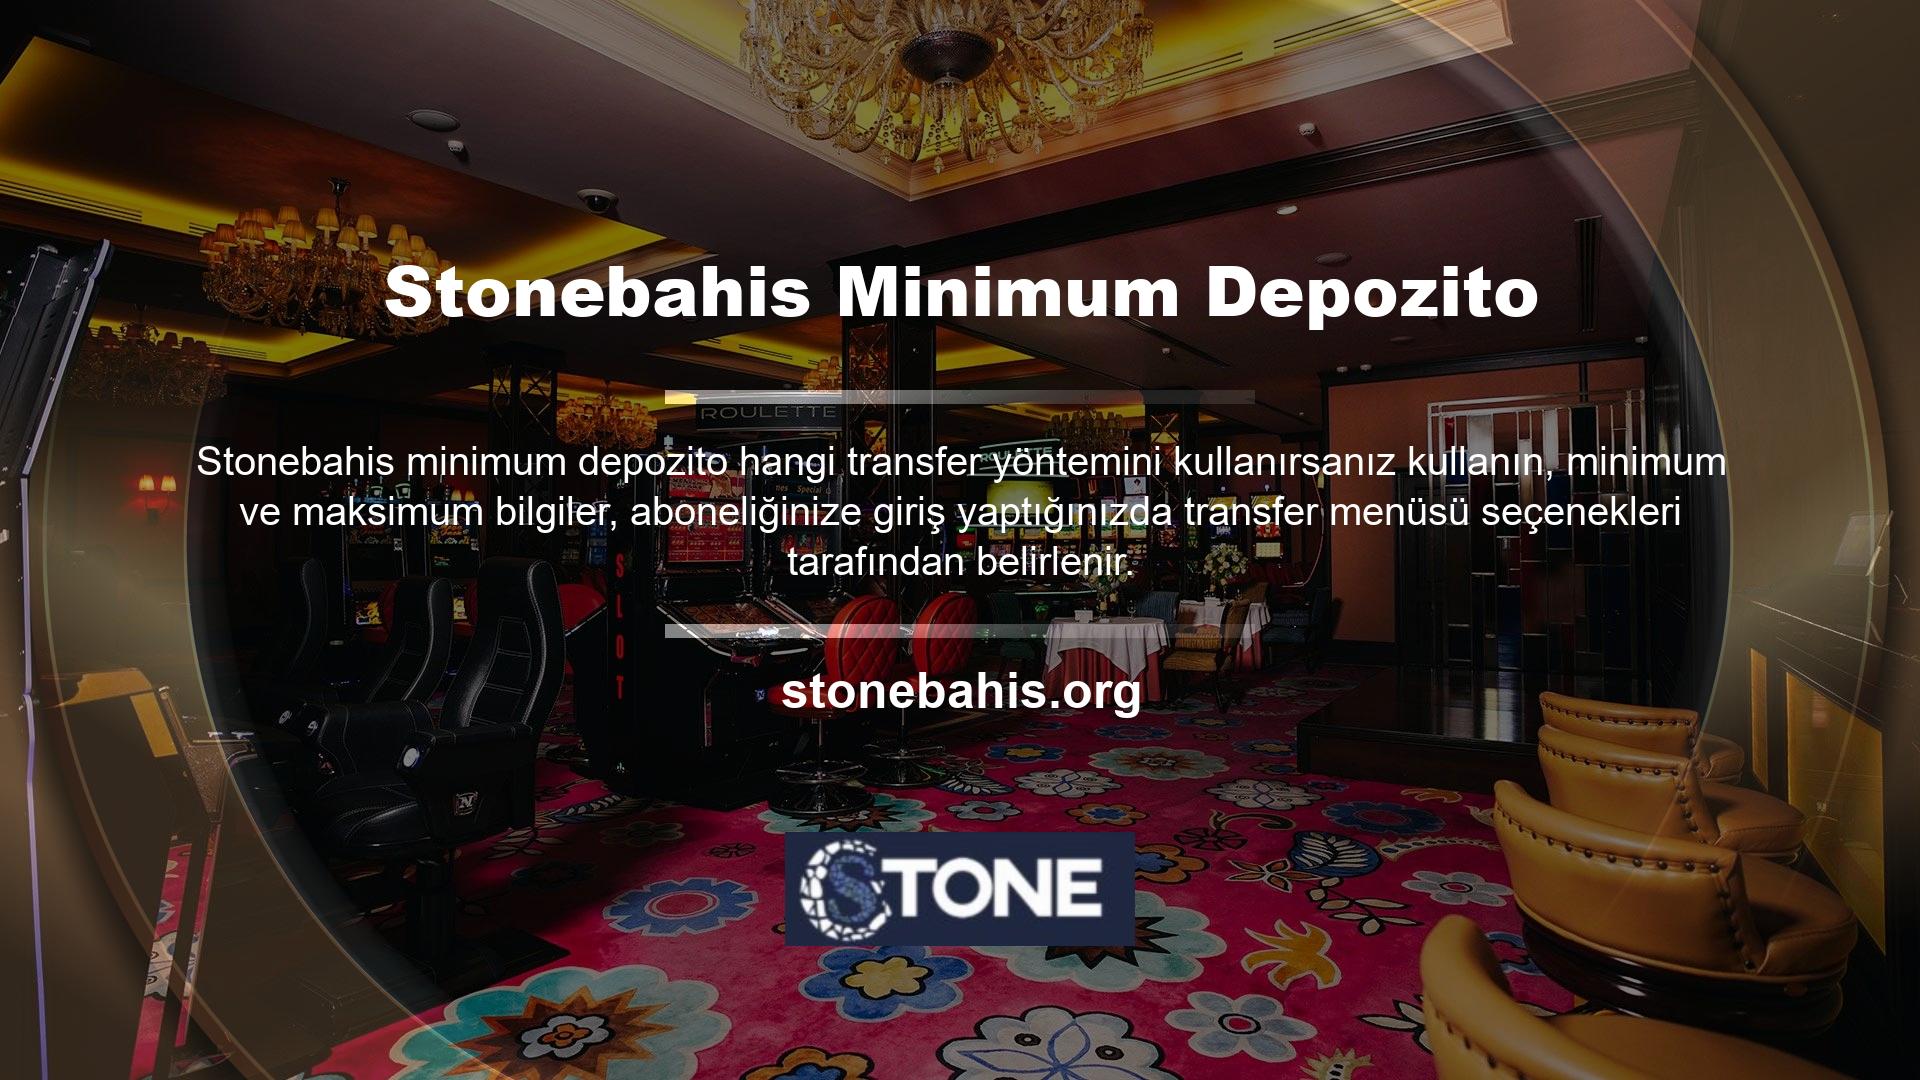 Stonebahis Casino oyunlarını oynayabilmenin ilk şartı bahis sitesine üye olmak ve siteye kayıt olmaktır